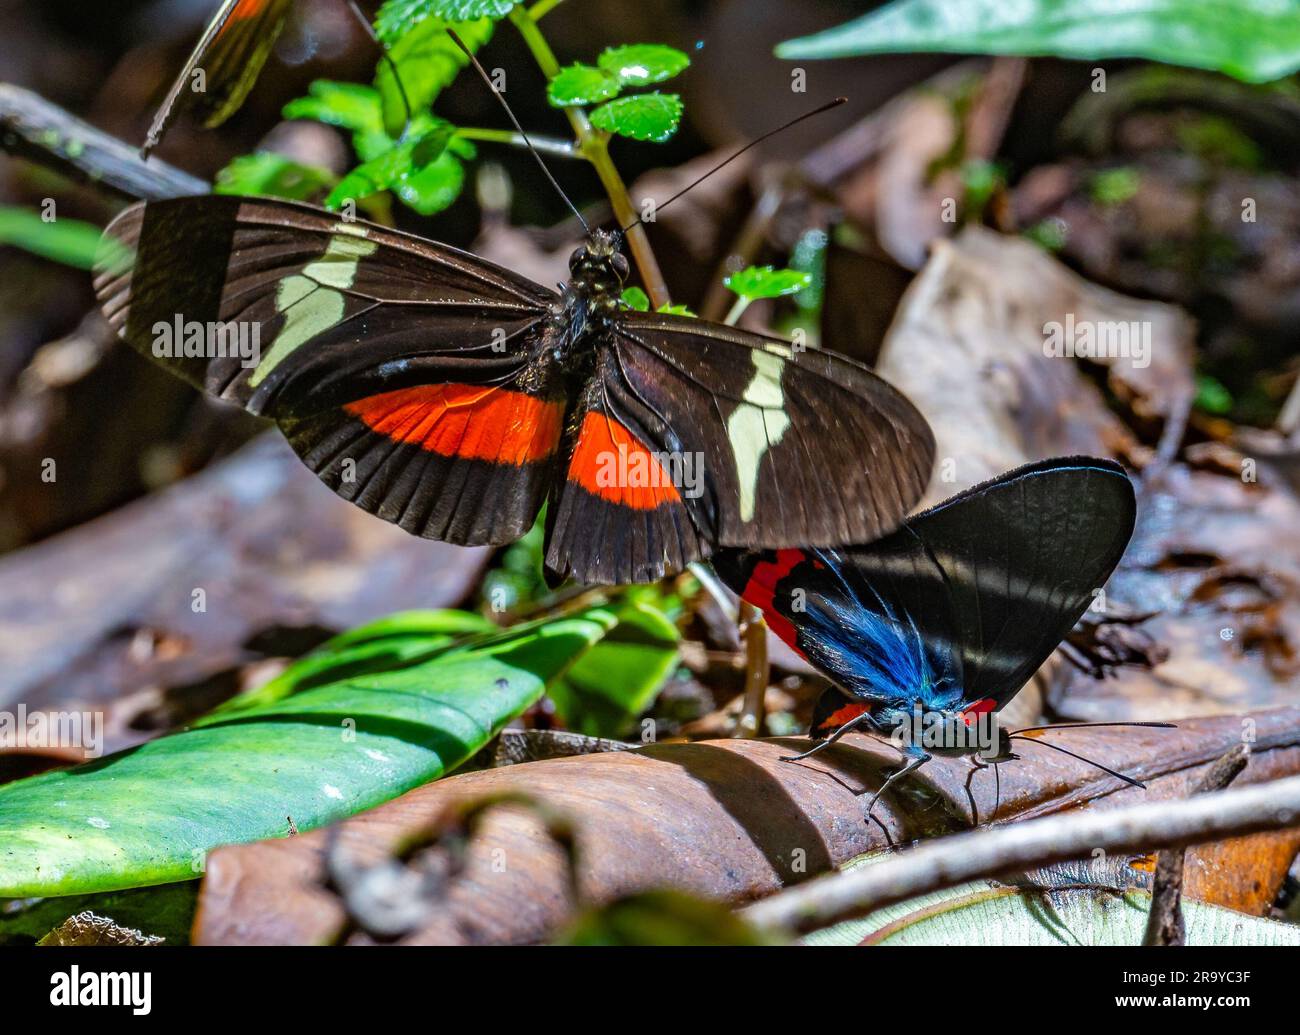 La marca de metal del Periandro (Rhetus periander) y el ala de longitud del Clysonymus (Heliconius clysonymus) se solapa en el suelo de la selva tropical. Colombia, América del Sur. Foto de stock